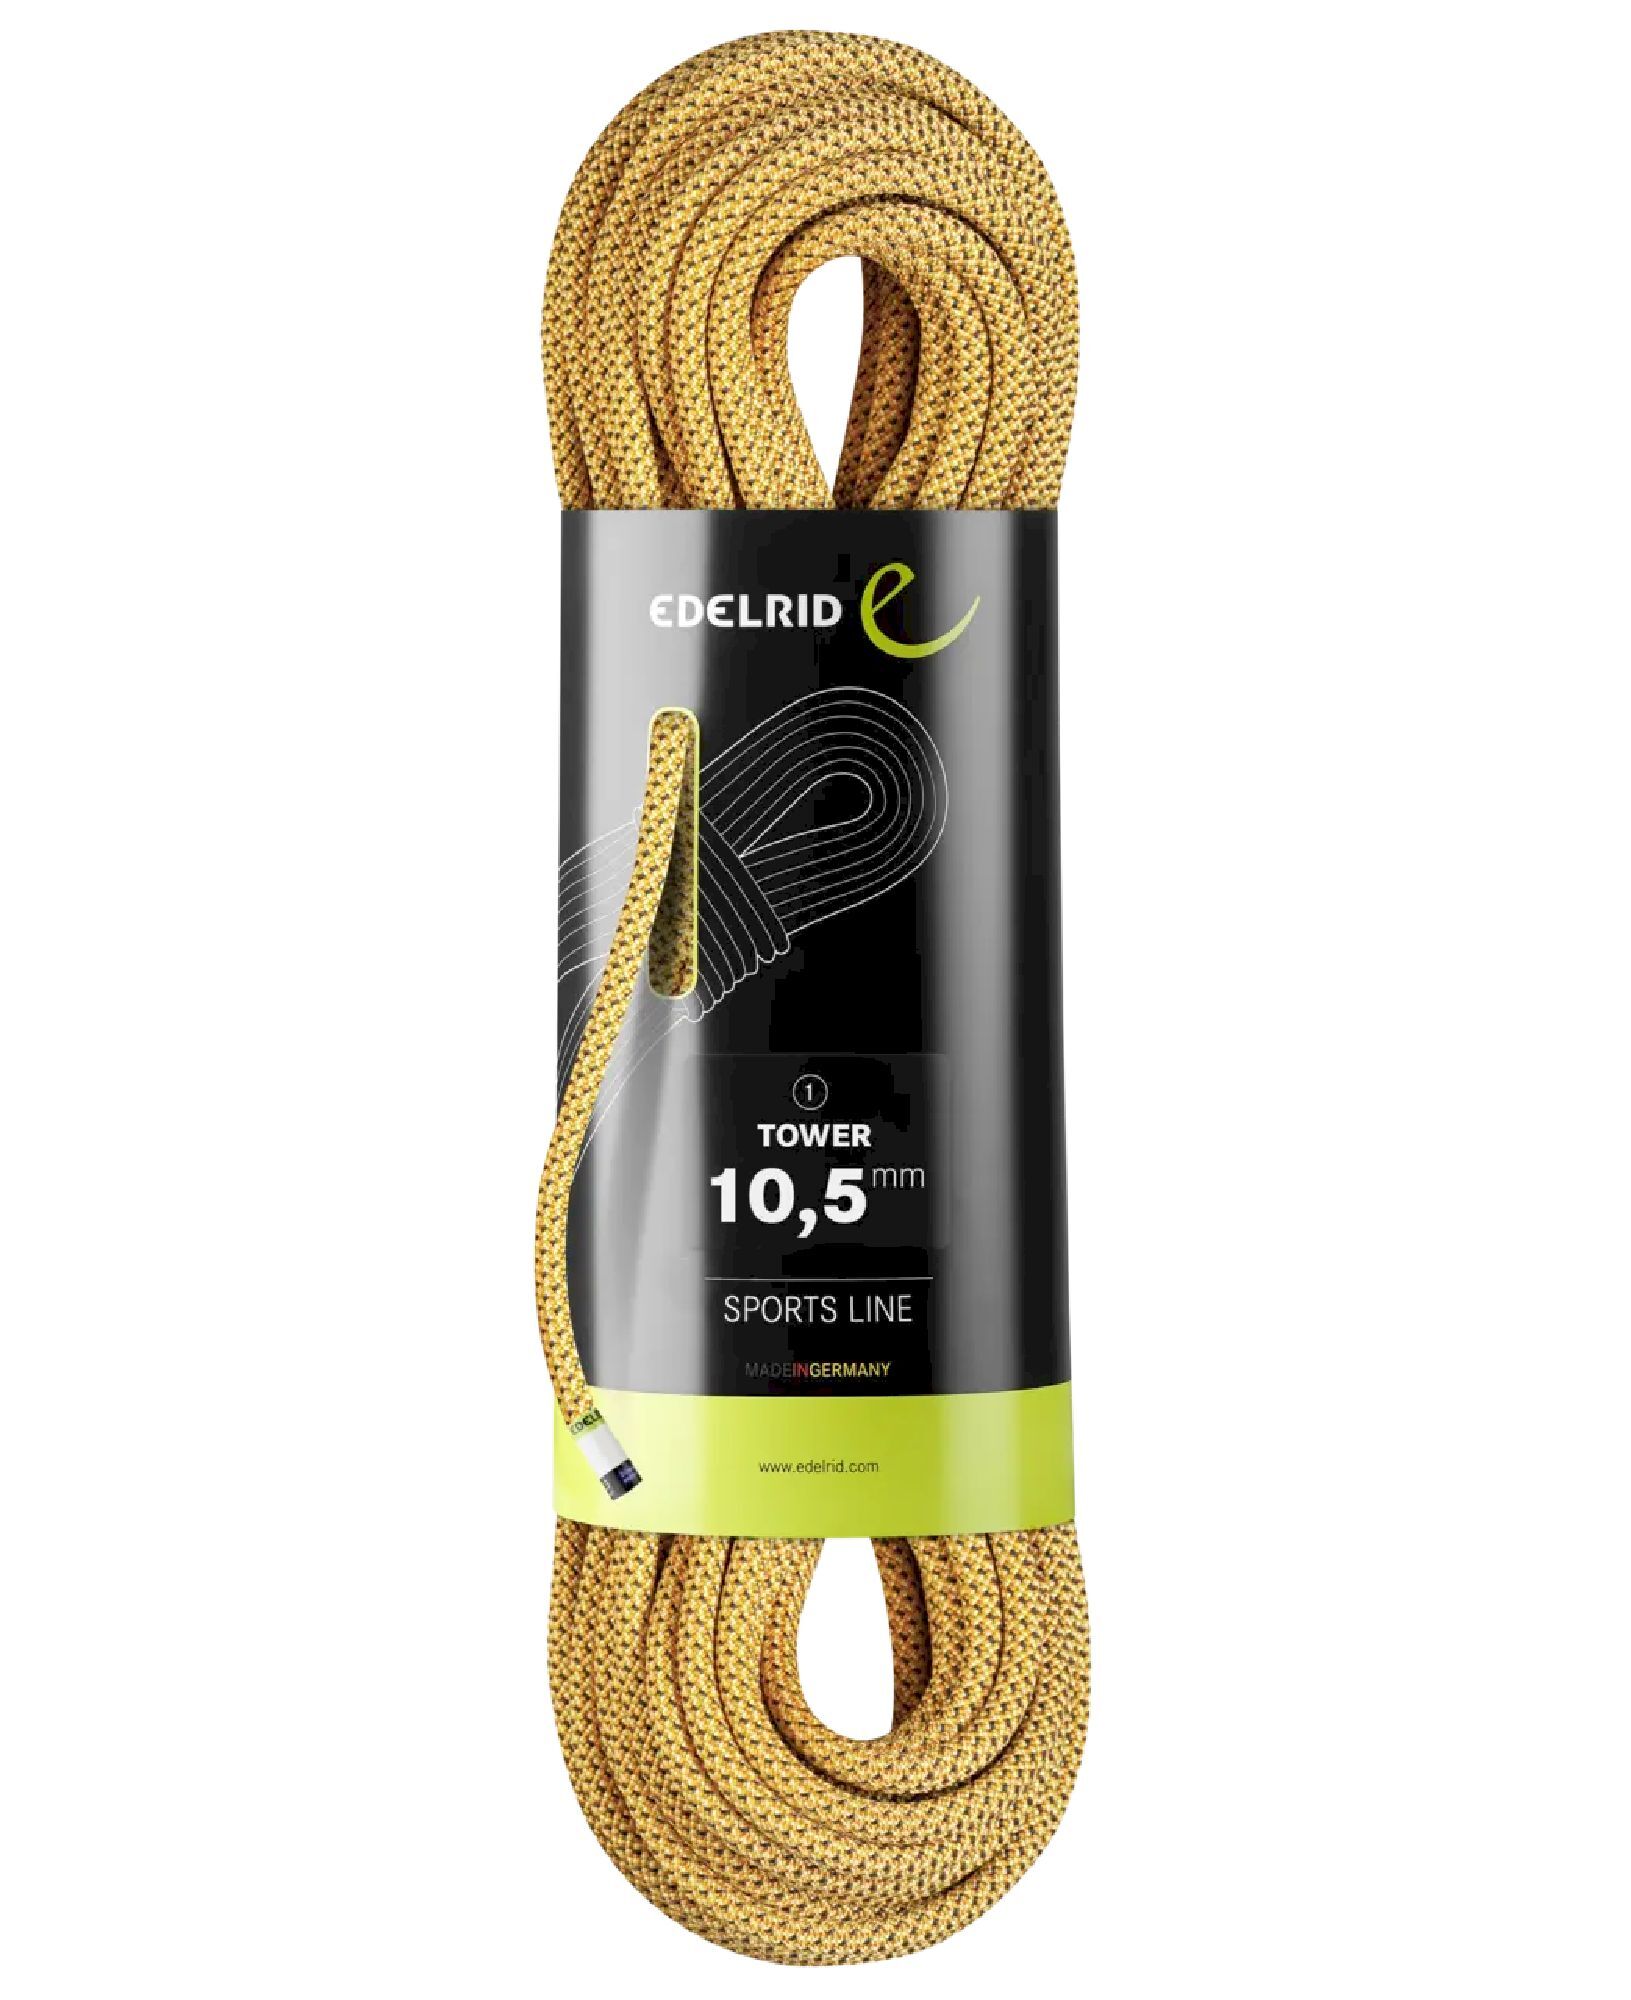 Edelrid Tower 10,5mm - Single rope | Hardloop